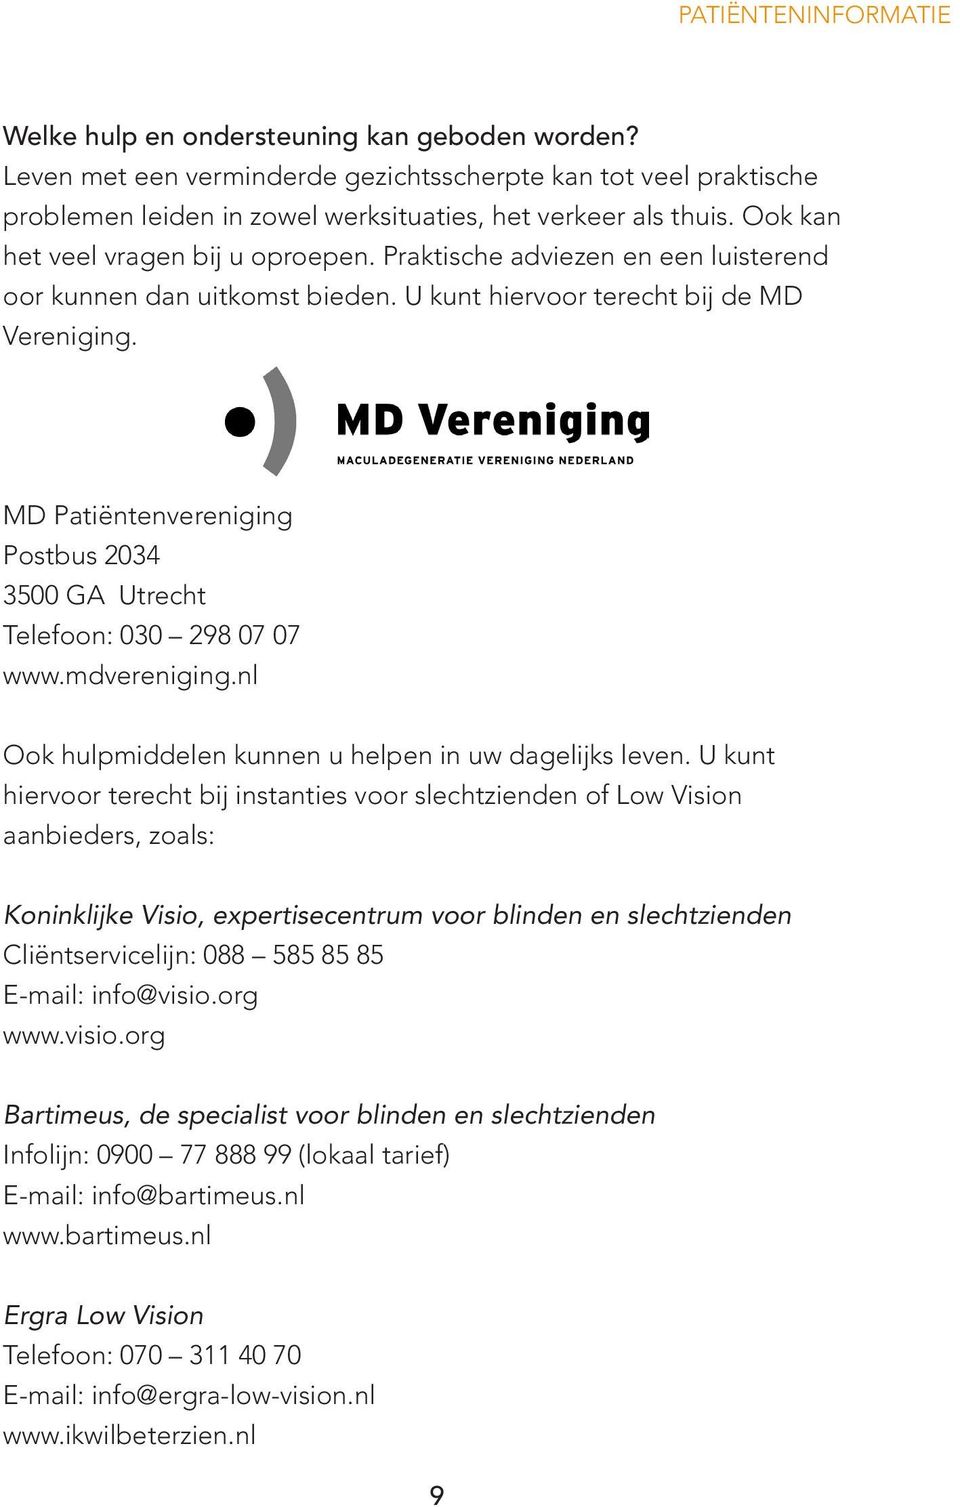 MD Patiëntenvereniging Postbus 2034 3500 GA Utrecht Telefoon: 030 298 07 07 www.mdvereniging.nl Ook hulpmiddelen kunnen u helpen in uw dagelijks leven.